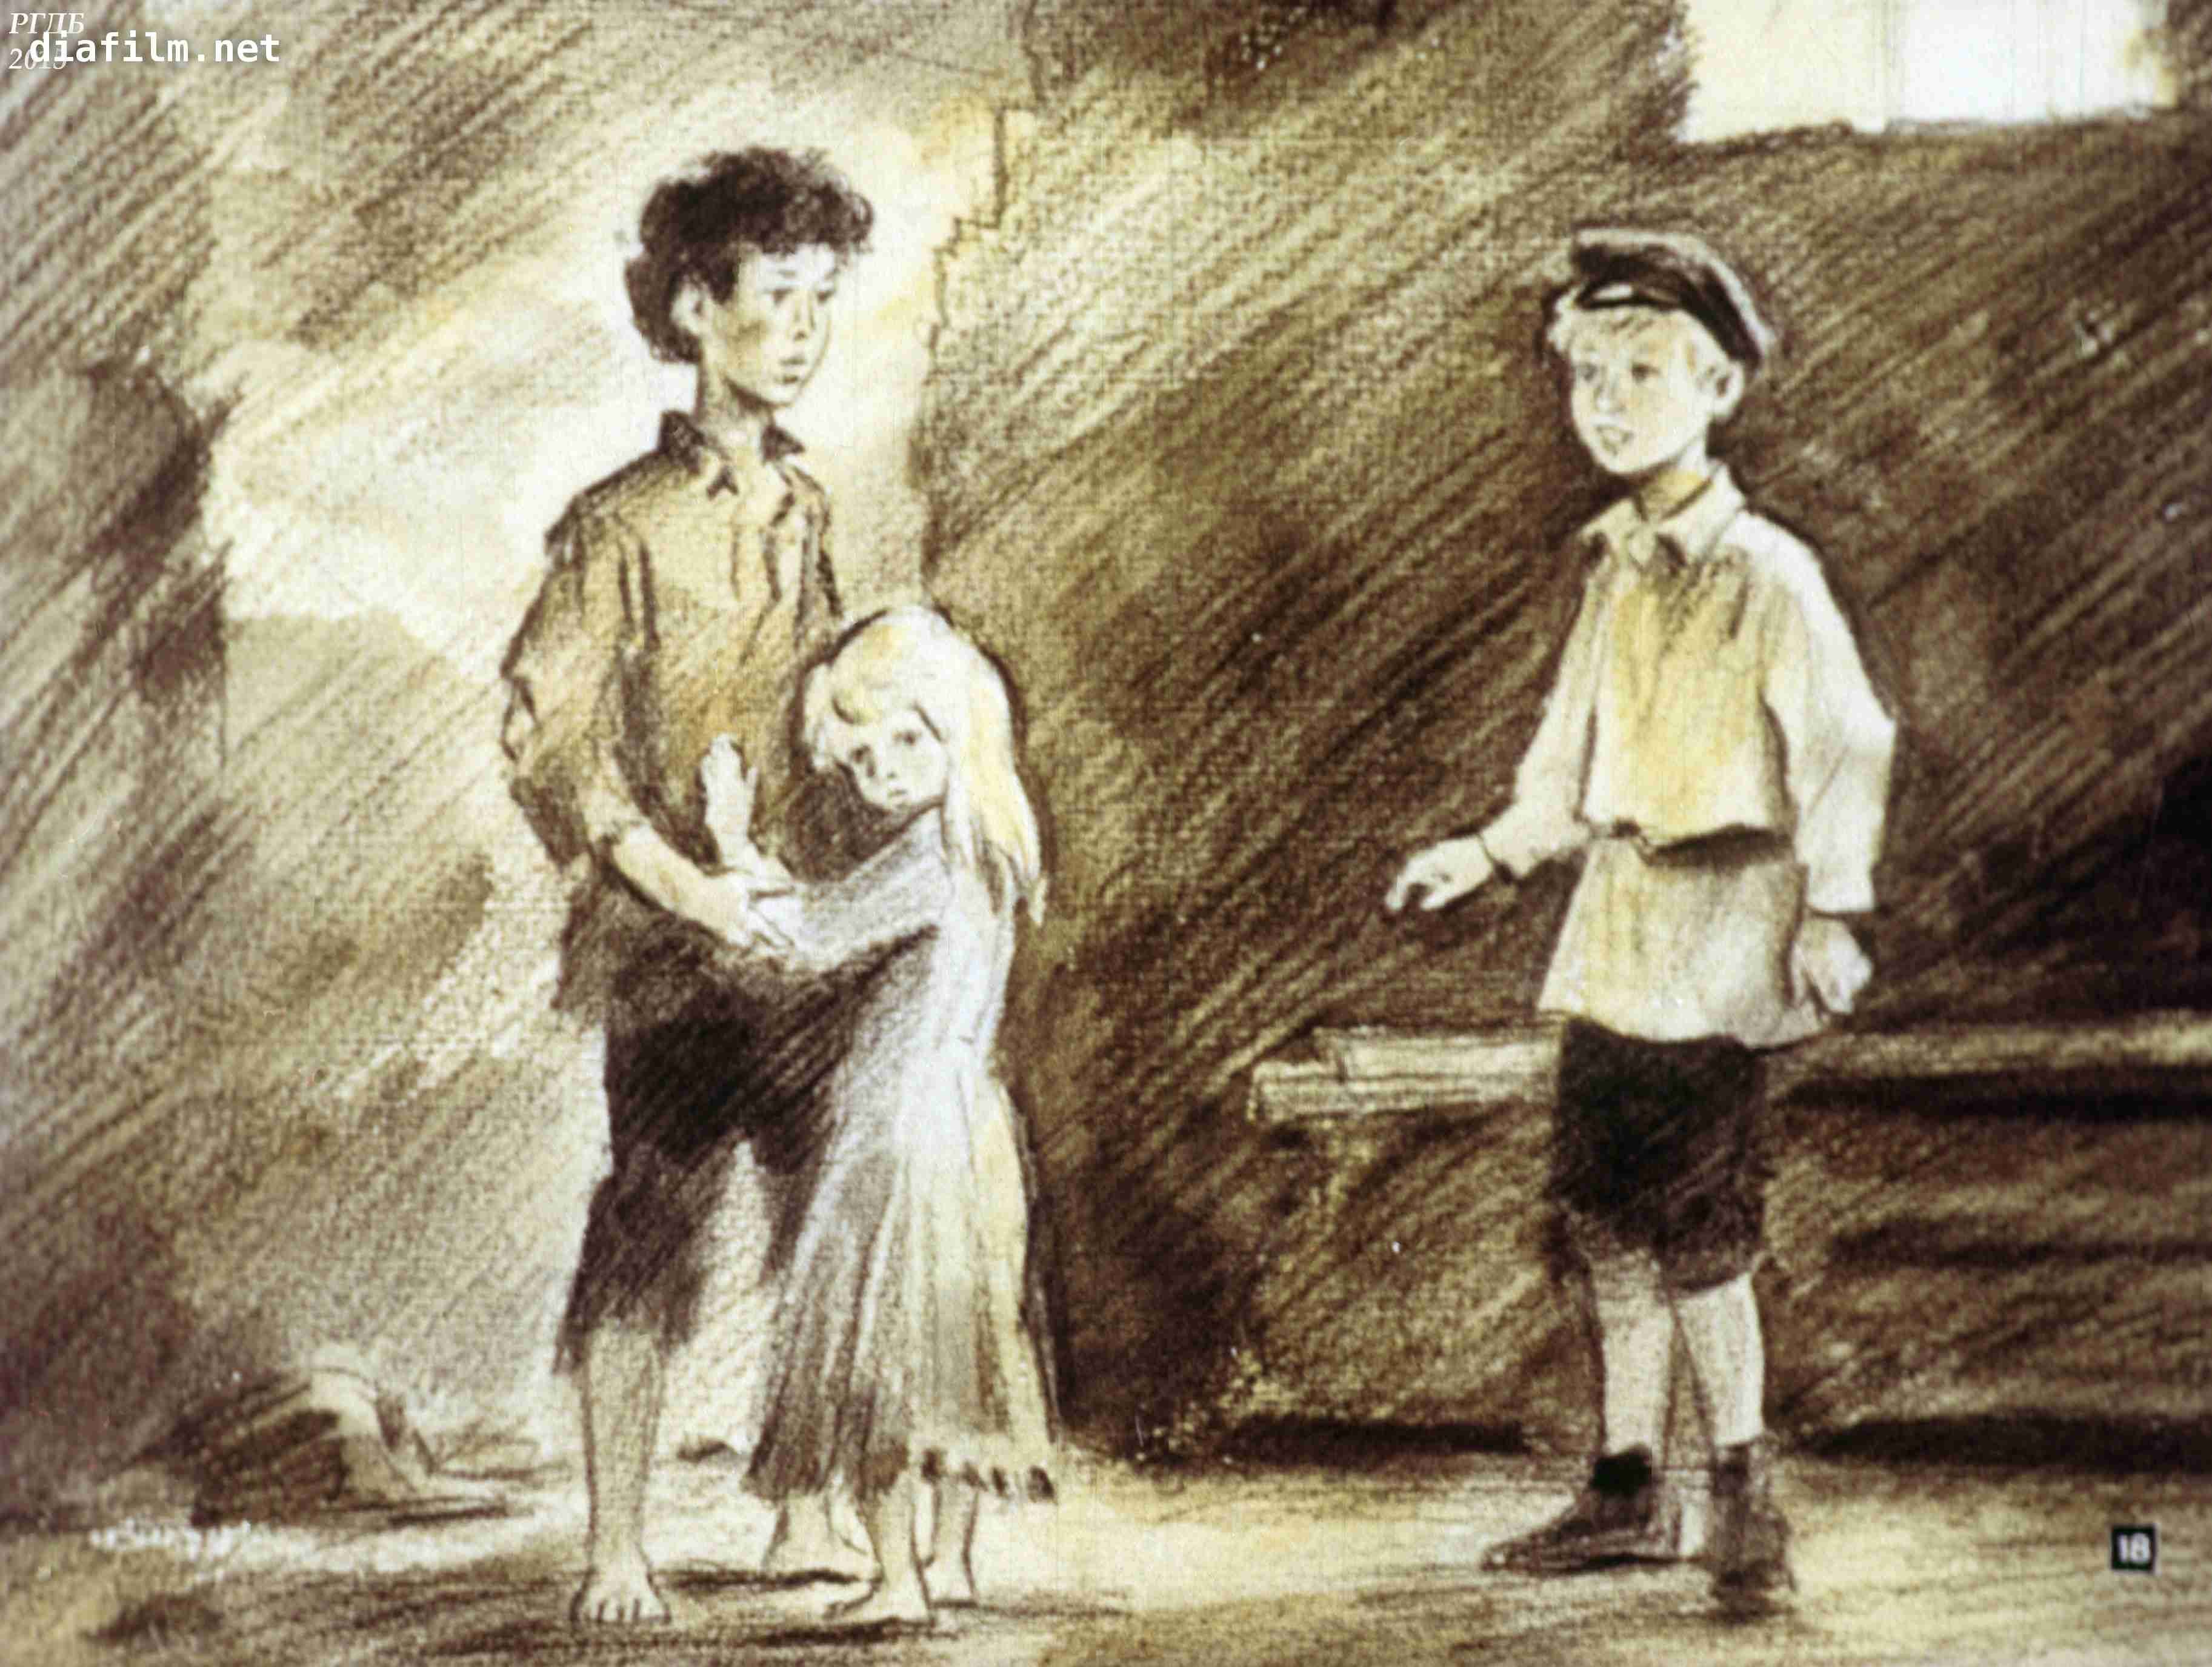 Разговор тыбурция с отцом васи. В. Короленко "дети подземелья". Иллюстрации к повести дети подземелья Короленко.